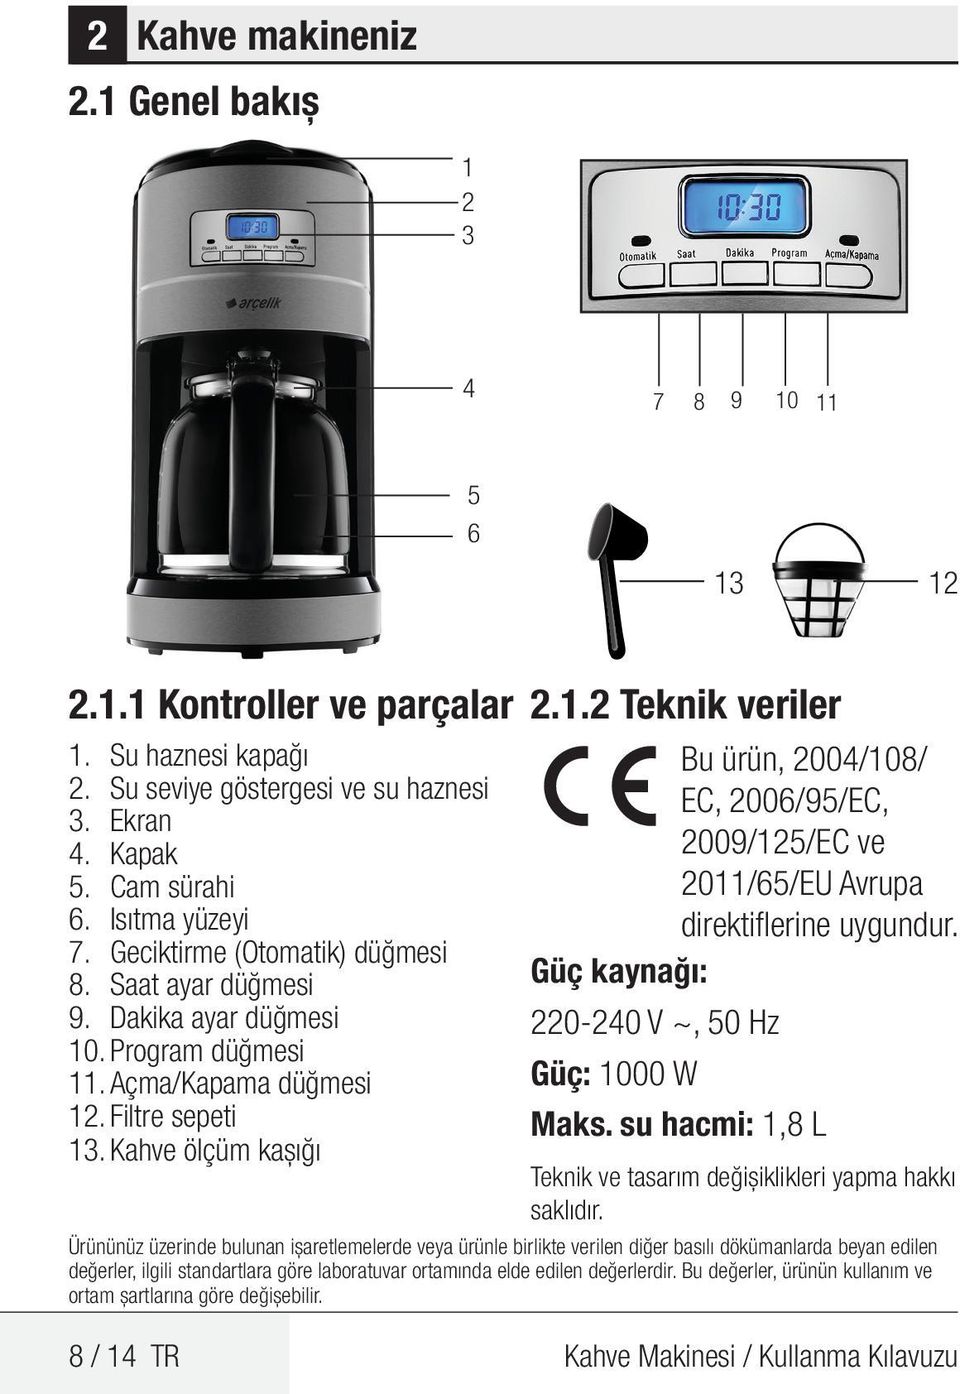 Güç kaynağı: 220-240 V ~, 50 Hz Güç: 1000 W Maks. su hacmi: 1,8 L Teknik ve tasarım değişiklikleri yapma hakkı saklıdır.